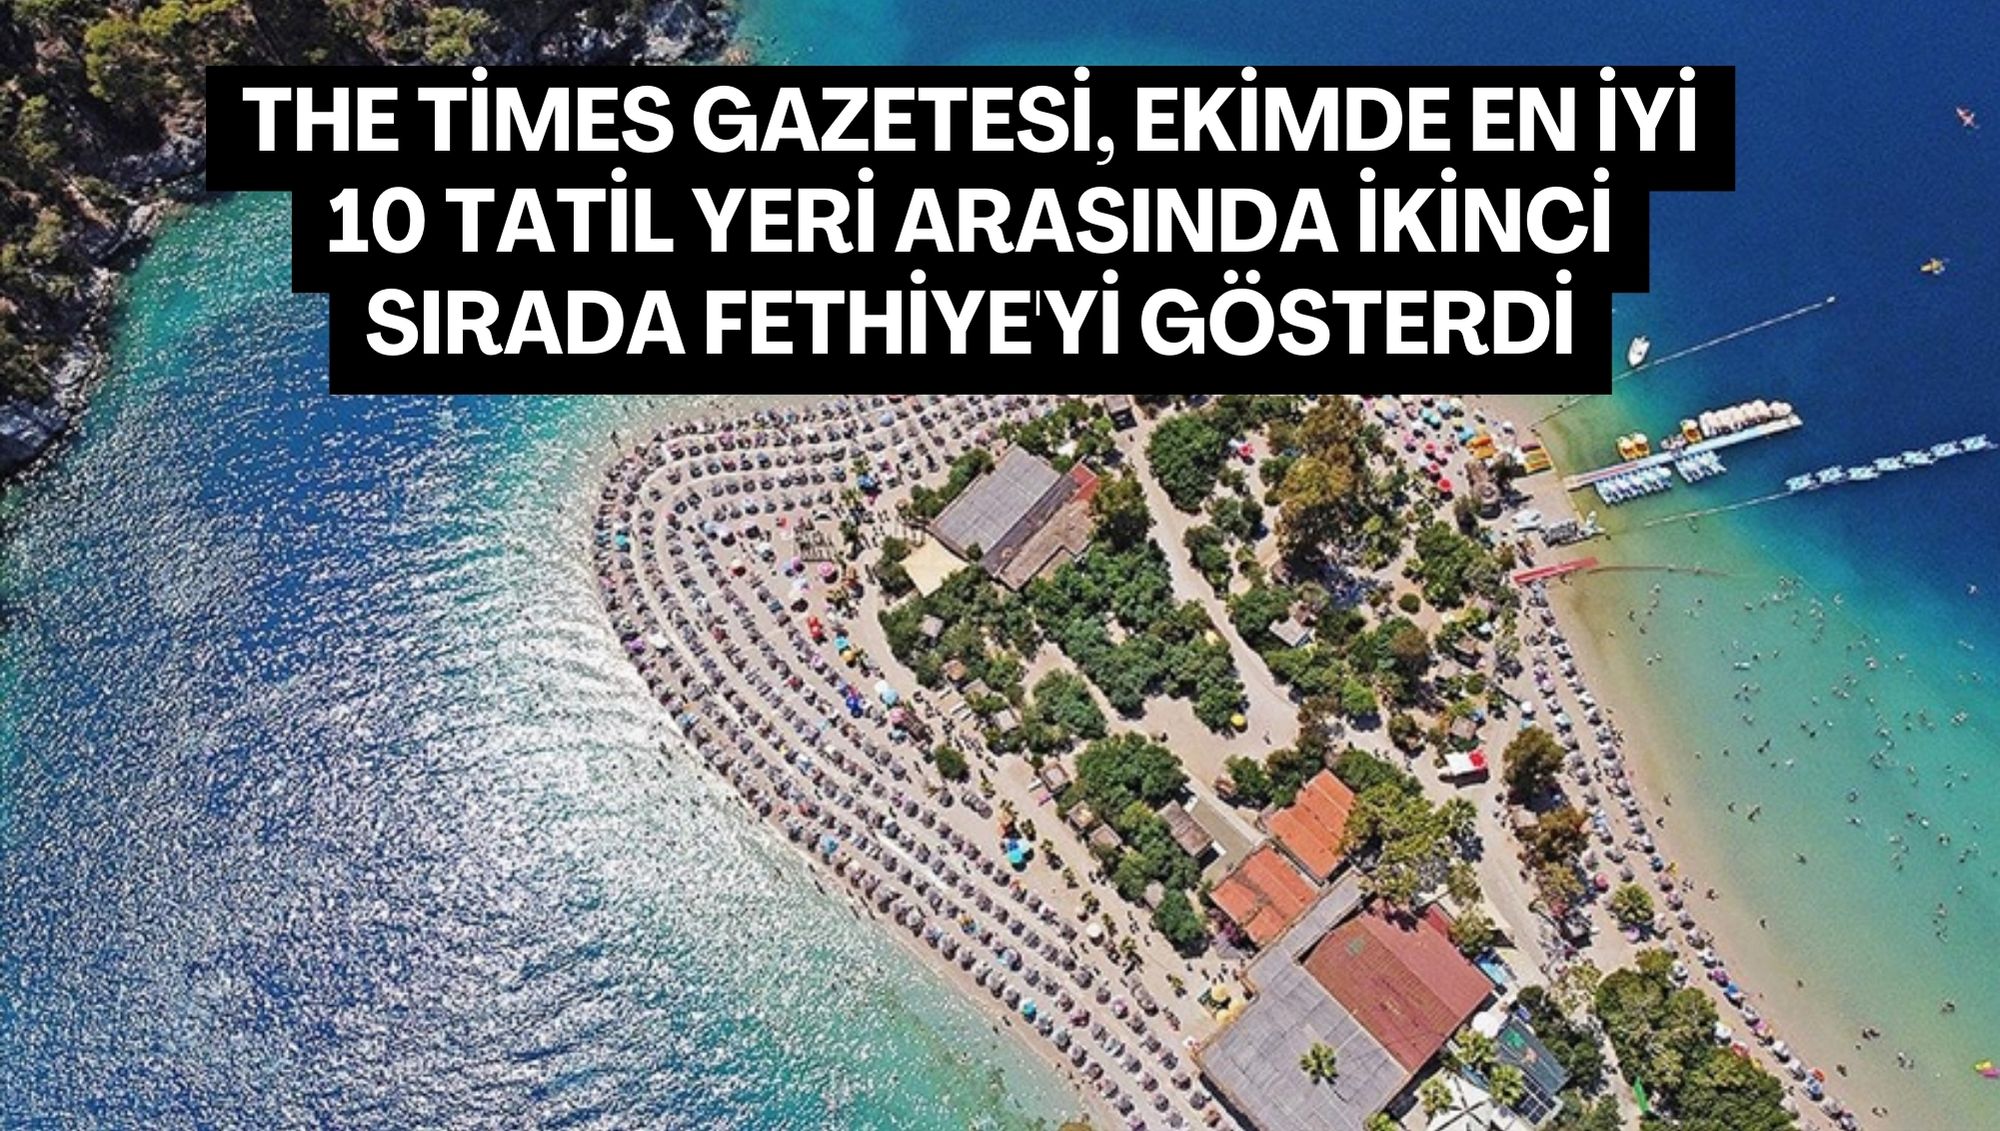 The Times Gazetesi, ekimde en iyi 10 tatil yeri arasında ikinci sırada Fethiye'yi gösterdi